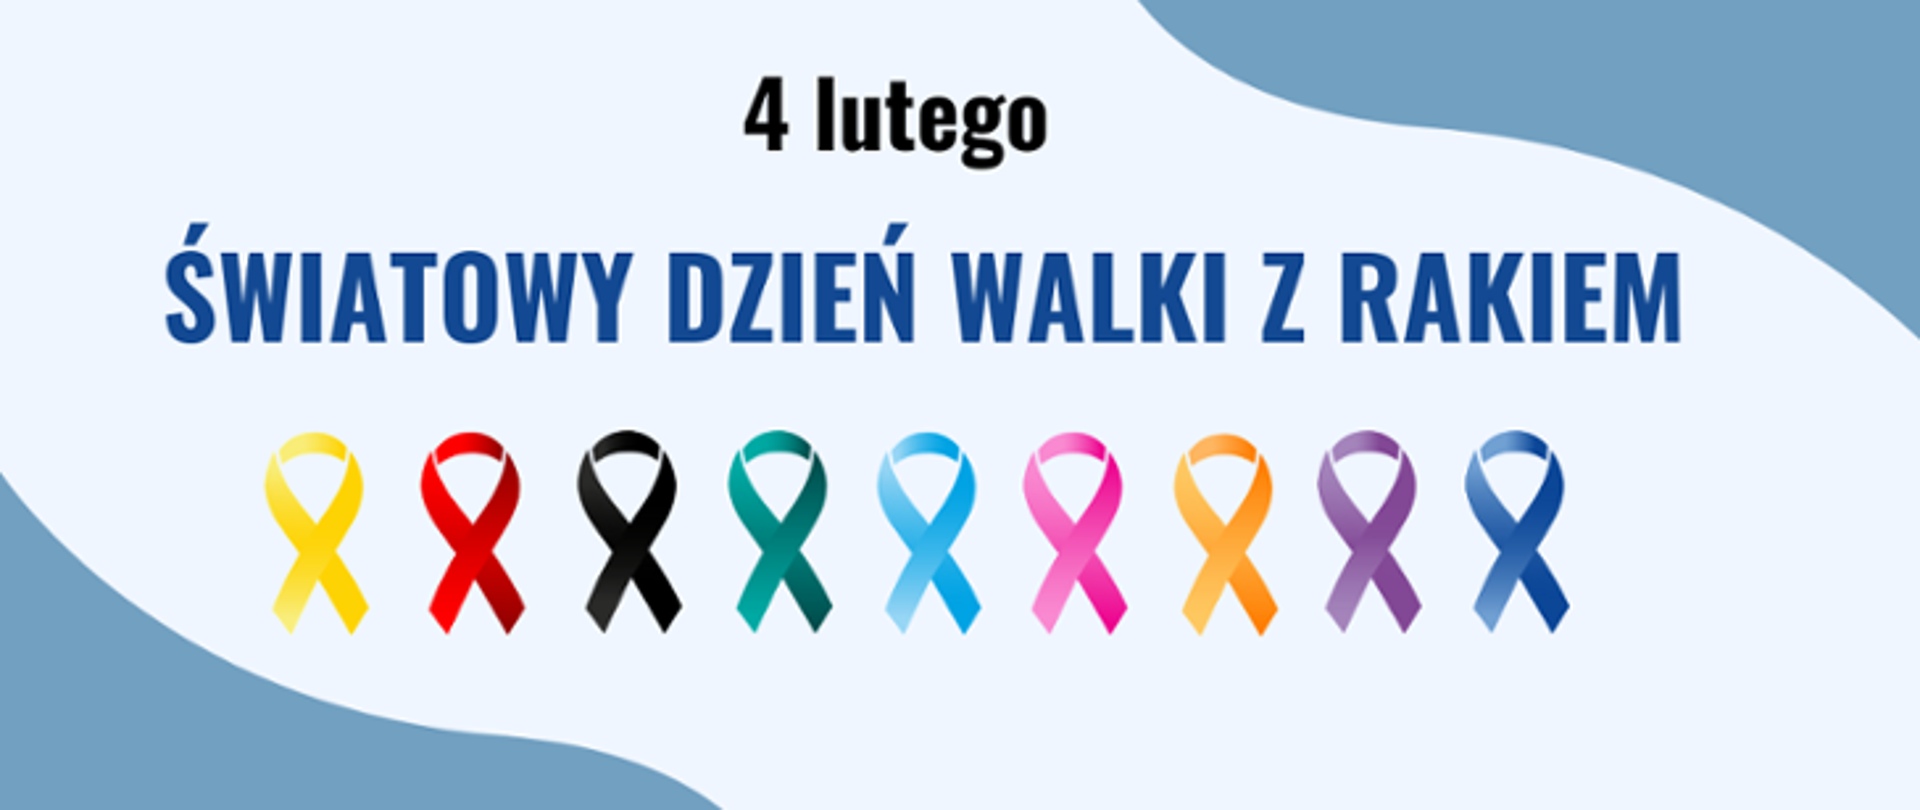 4 lutego Światowy Dzień Walki z Rakiem